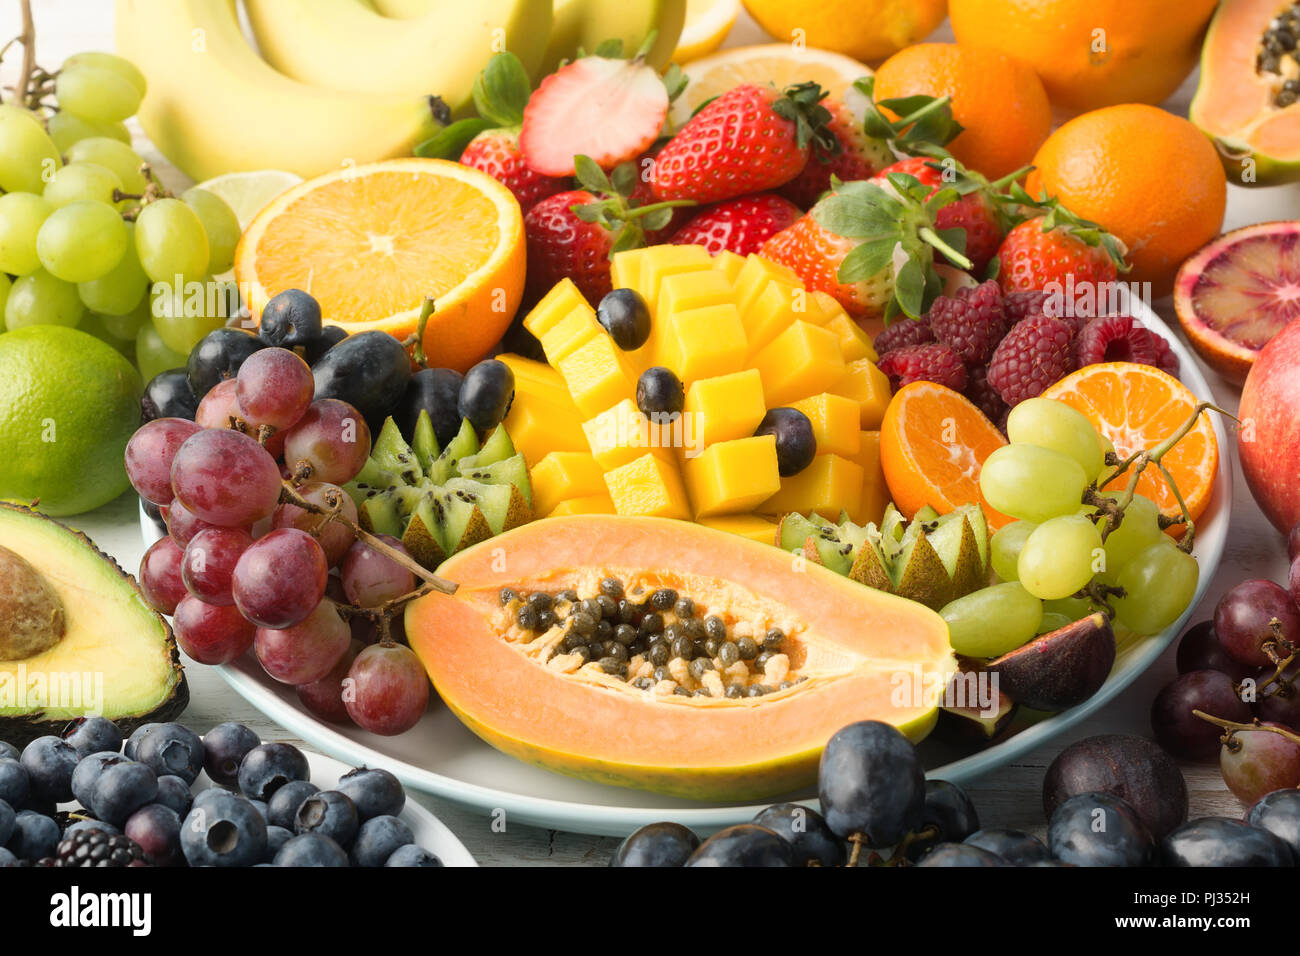 La saine alimentation, les fruits et légumes dans les couleurs arc-en-ciel sur une assiette, papaye, mangue, raisin, fruits rouges, orange, sur le tableau blanc, selective focus Banque D'Images